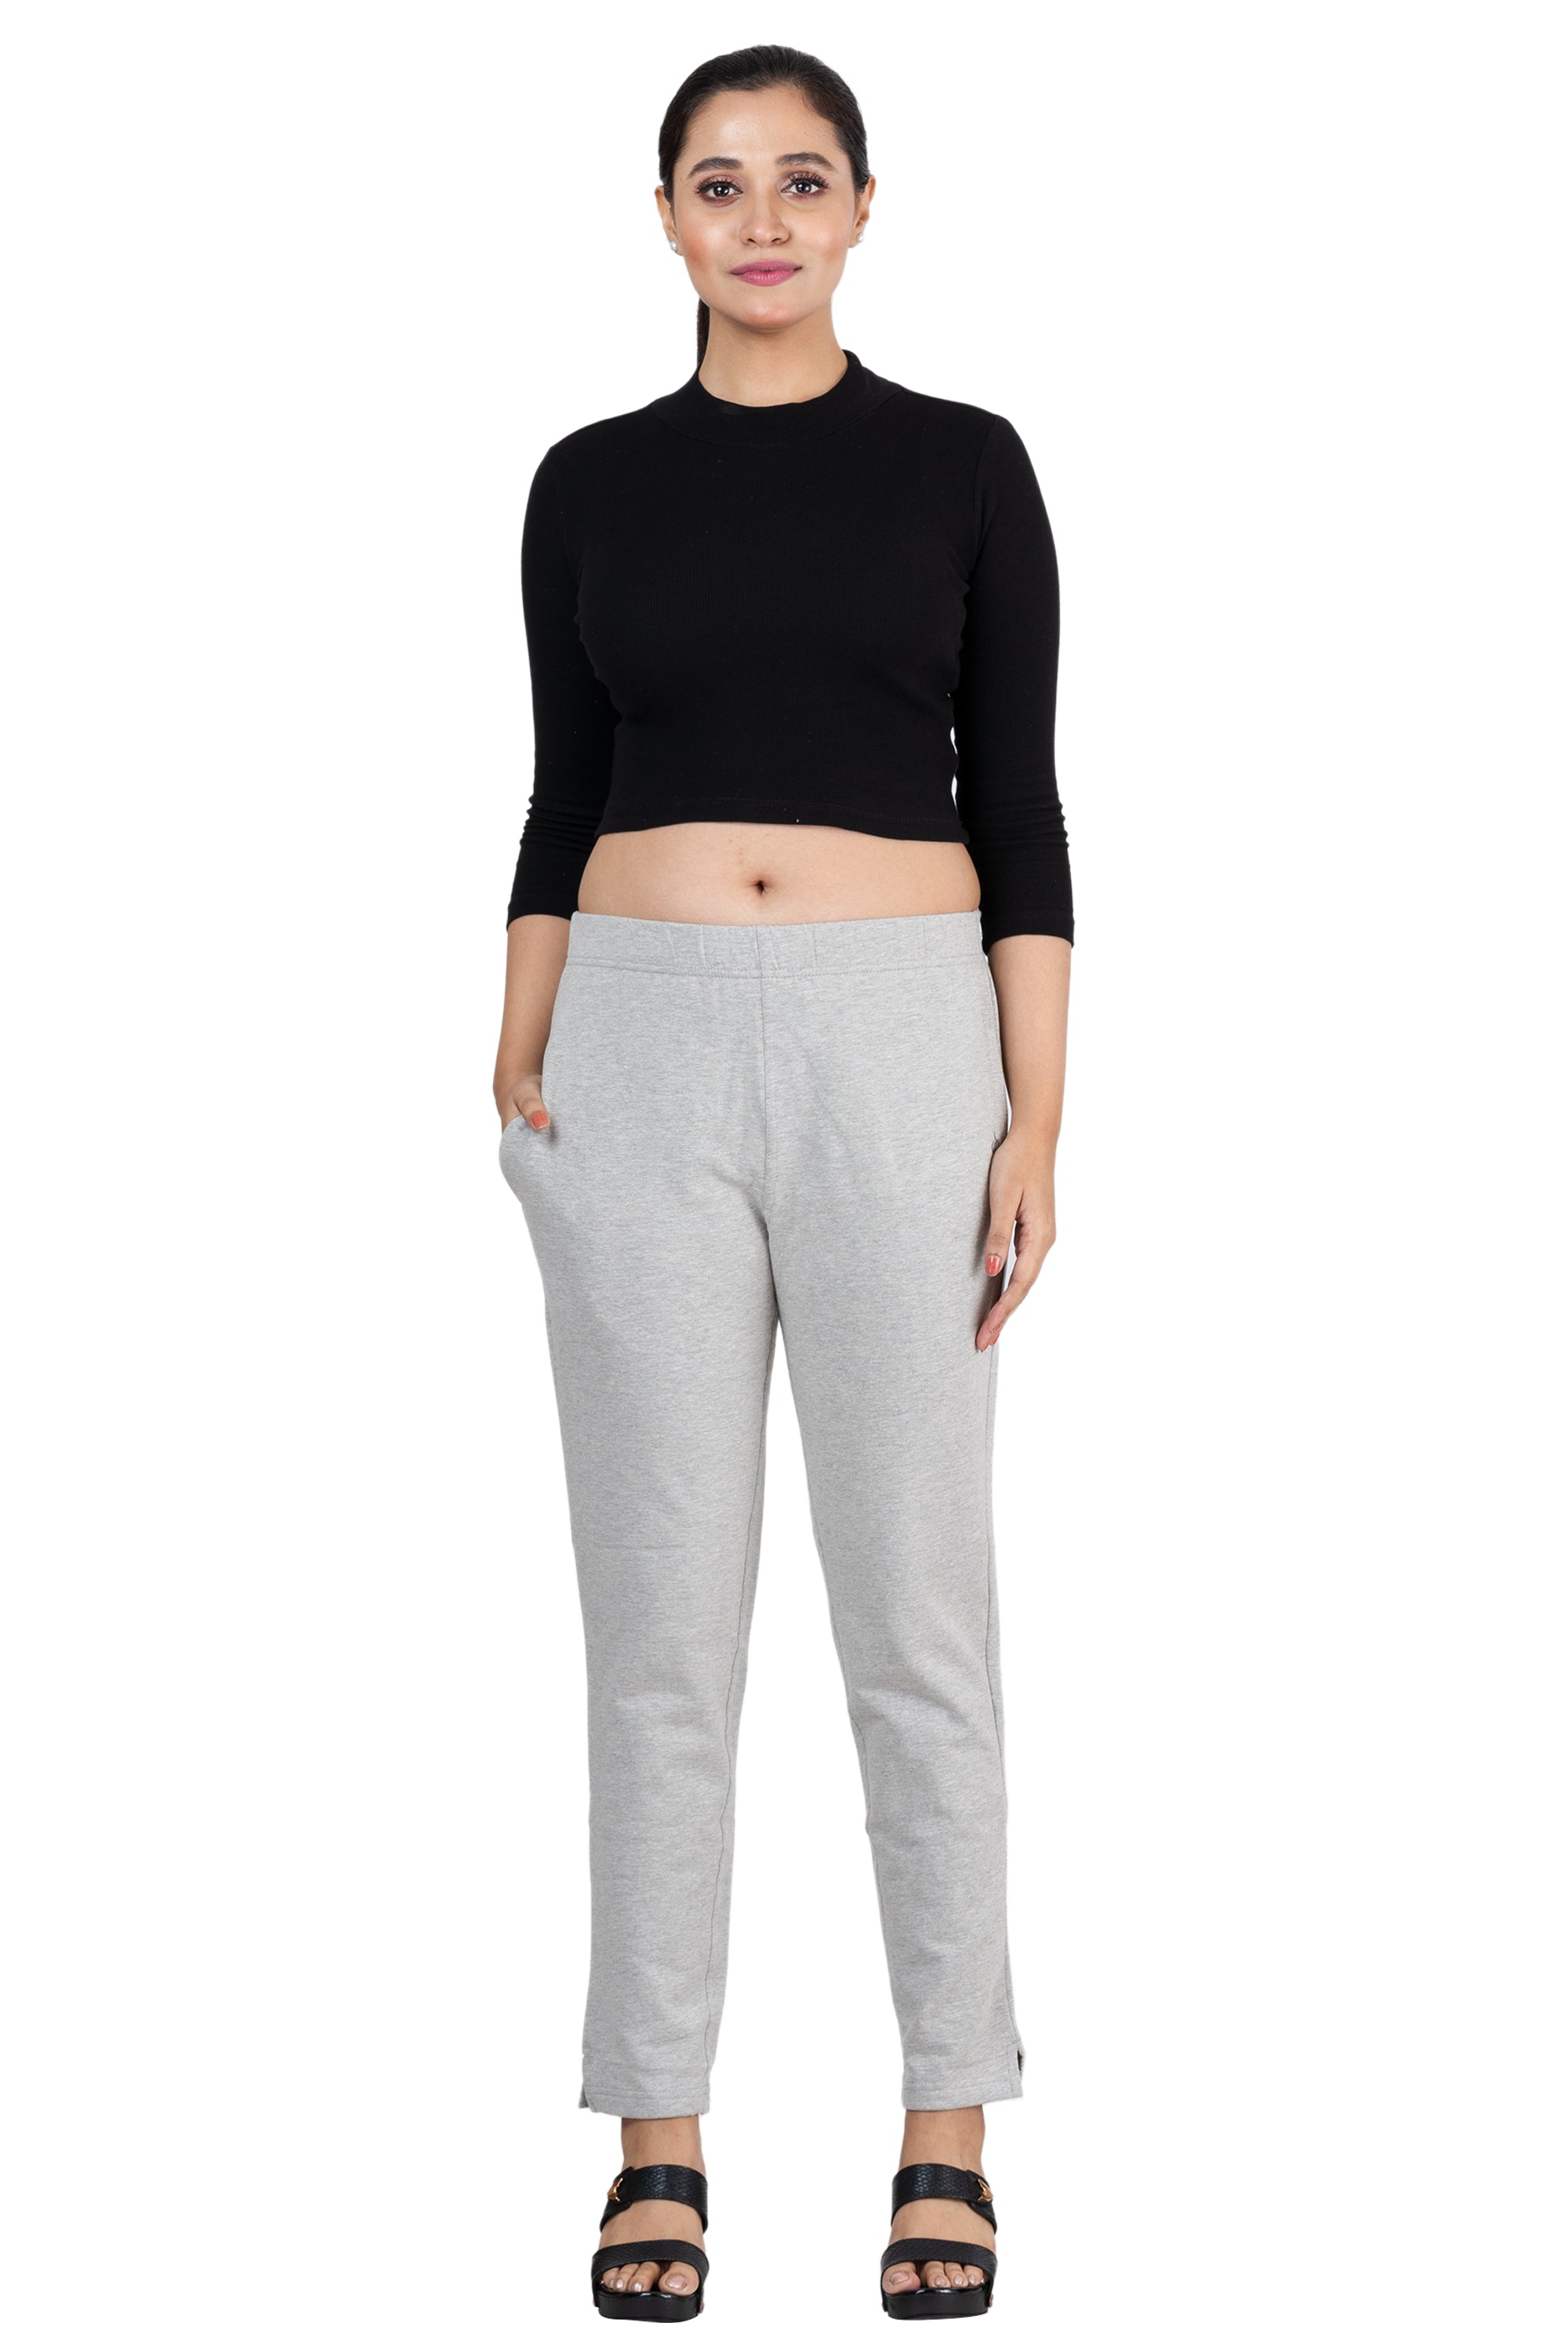 Buy Deepee Twister Knit Pants  Yoga Pants Kurti Pants Leisure Wear   Deepee Online Store